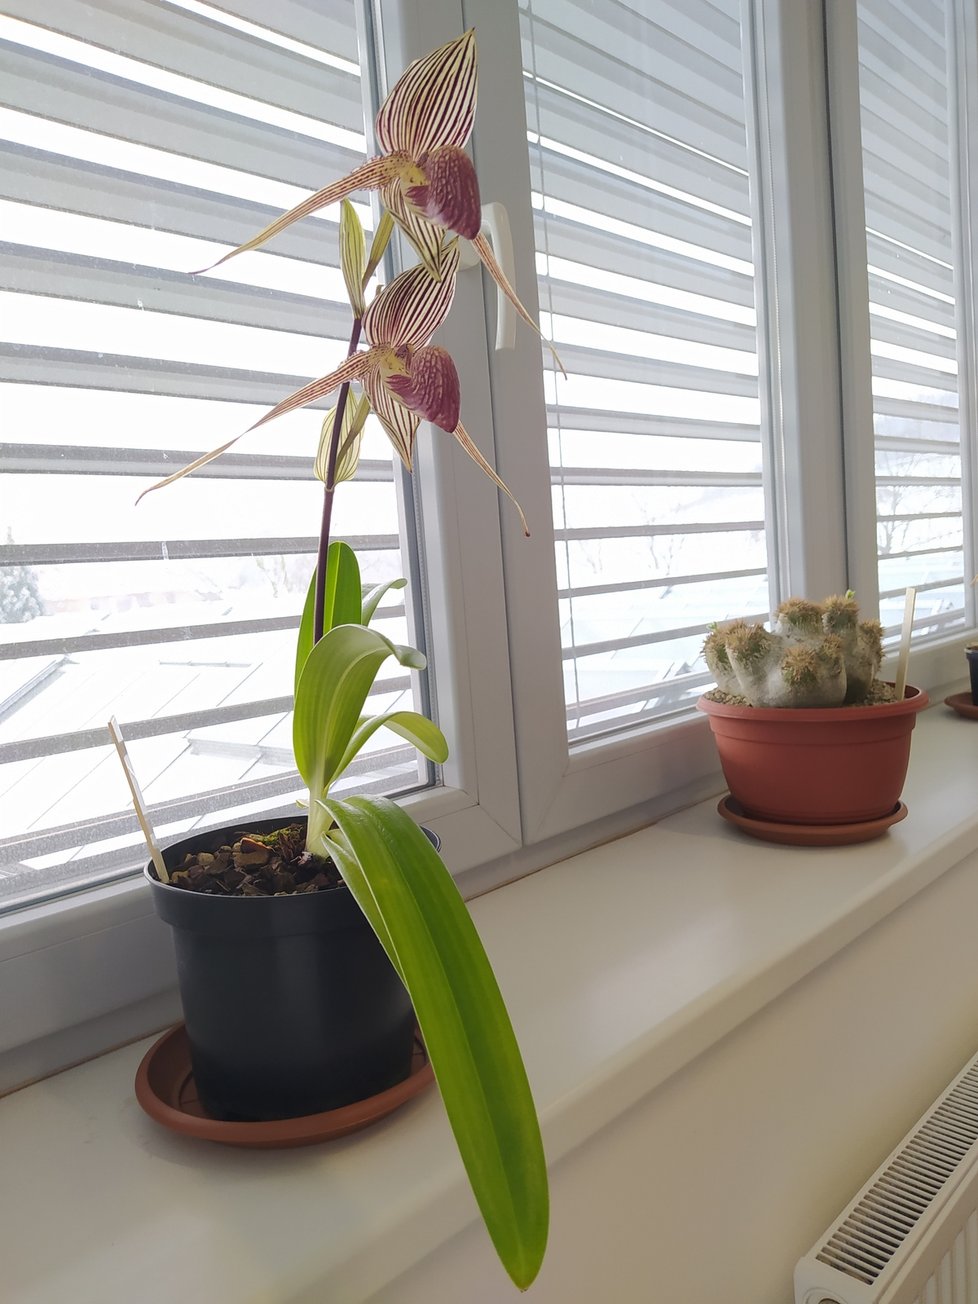 Kancelář ředitele Černého zdobí čtyři rostliny. Orchideje se obměňují podle toho, jak kvetou.